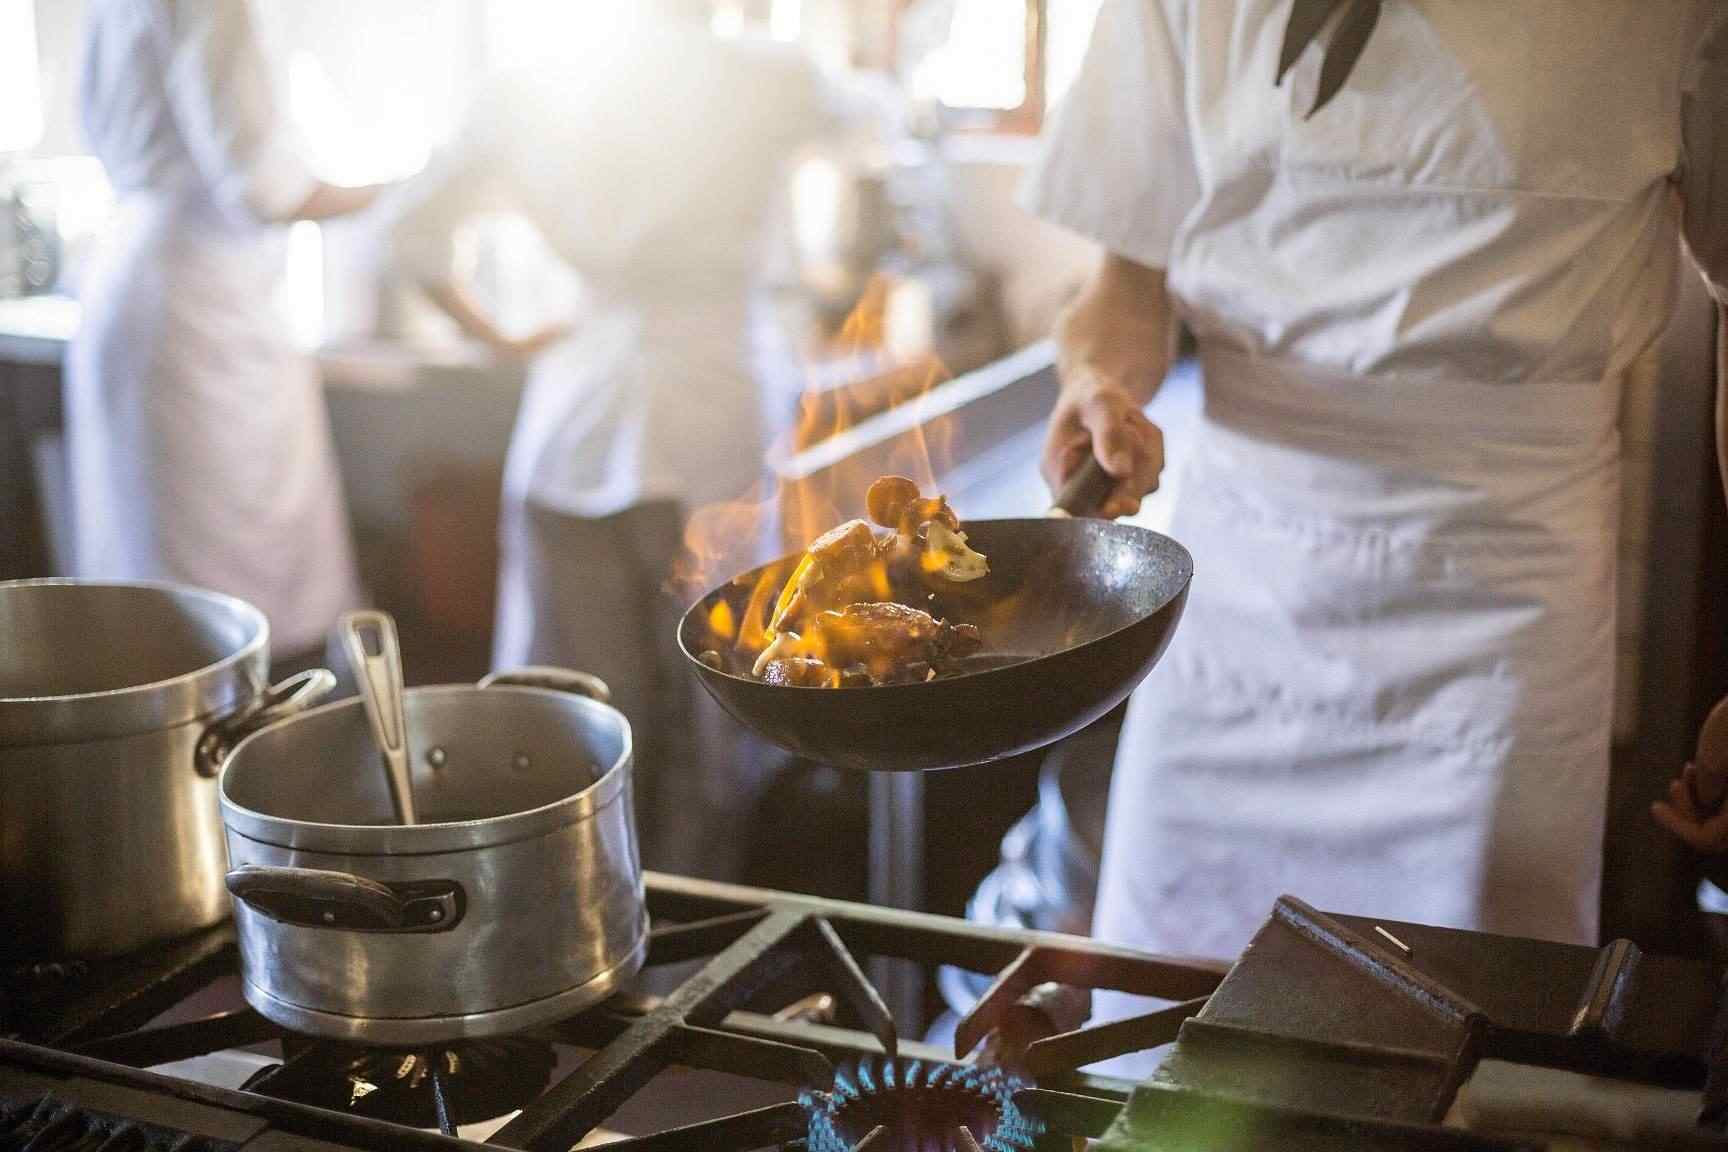 Provozovatelé restaurací mohou ušetřit při přechodu na plyn